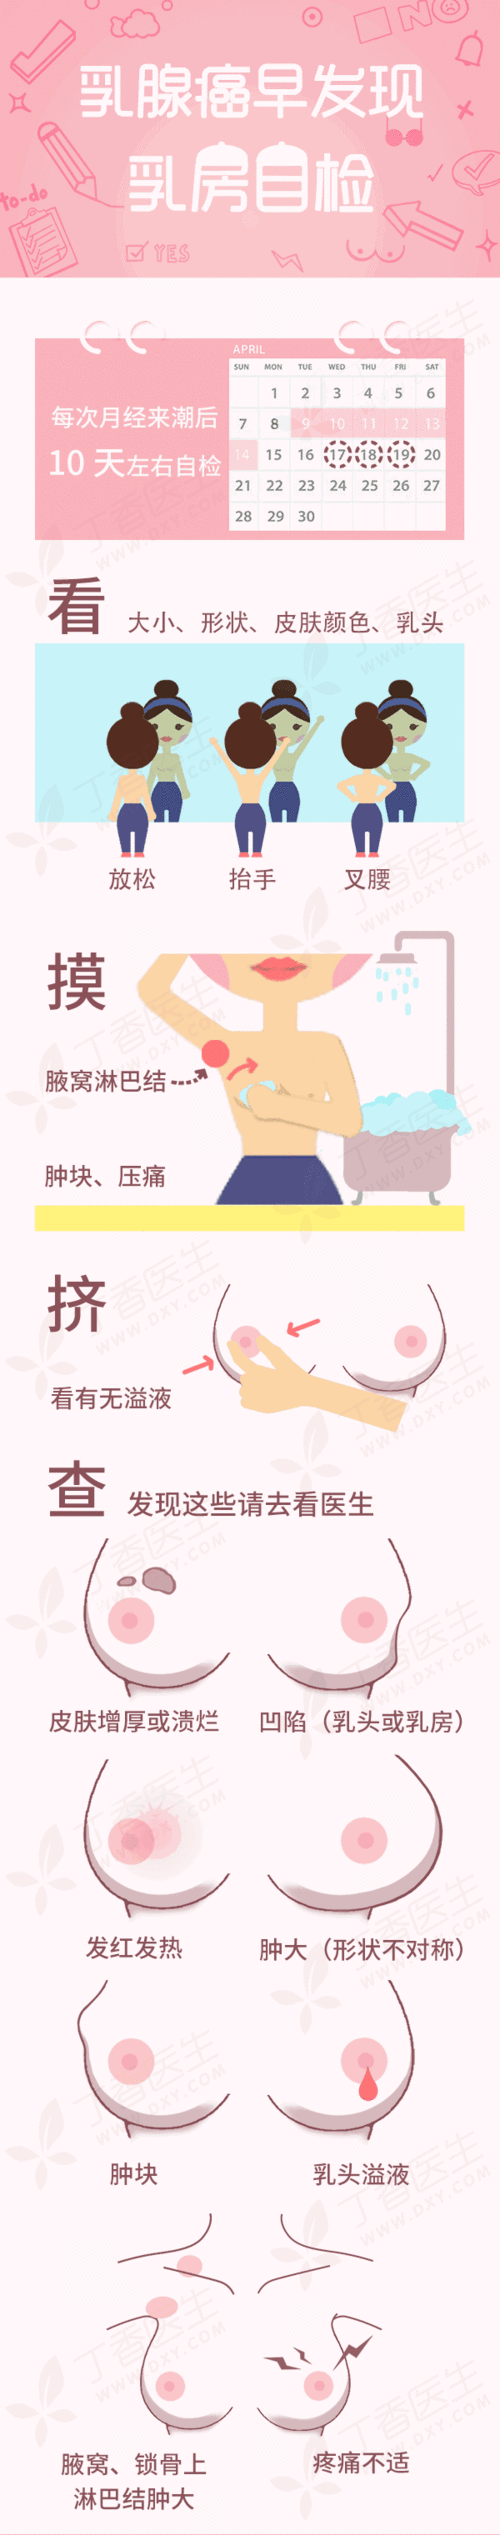 中国乳腺癌增速全球第一,该如何预防?